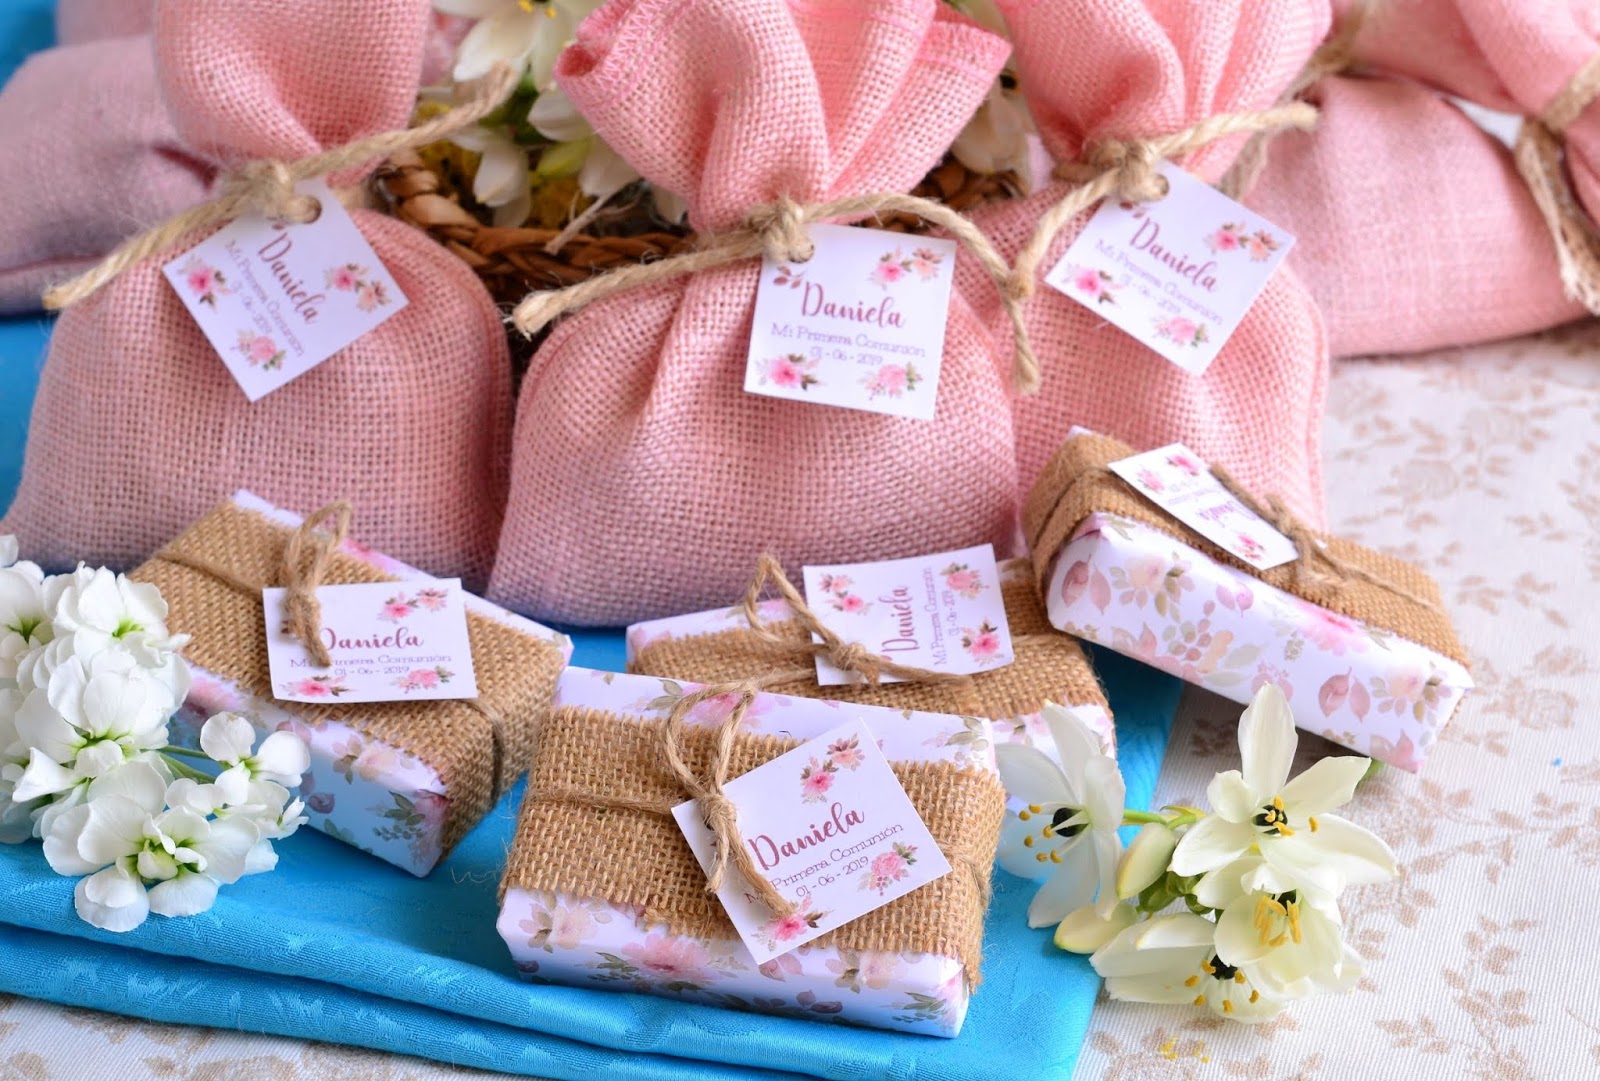 El Jabón Casero on X: Regalos para invitados de comuniones, jabones  decorados en colores rosa y blanco con flores y etiqueta para comunión de  niña. Más ideas en nuestro blog  #eljaboncasero #